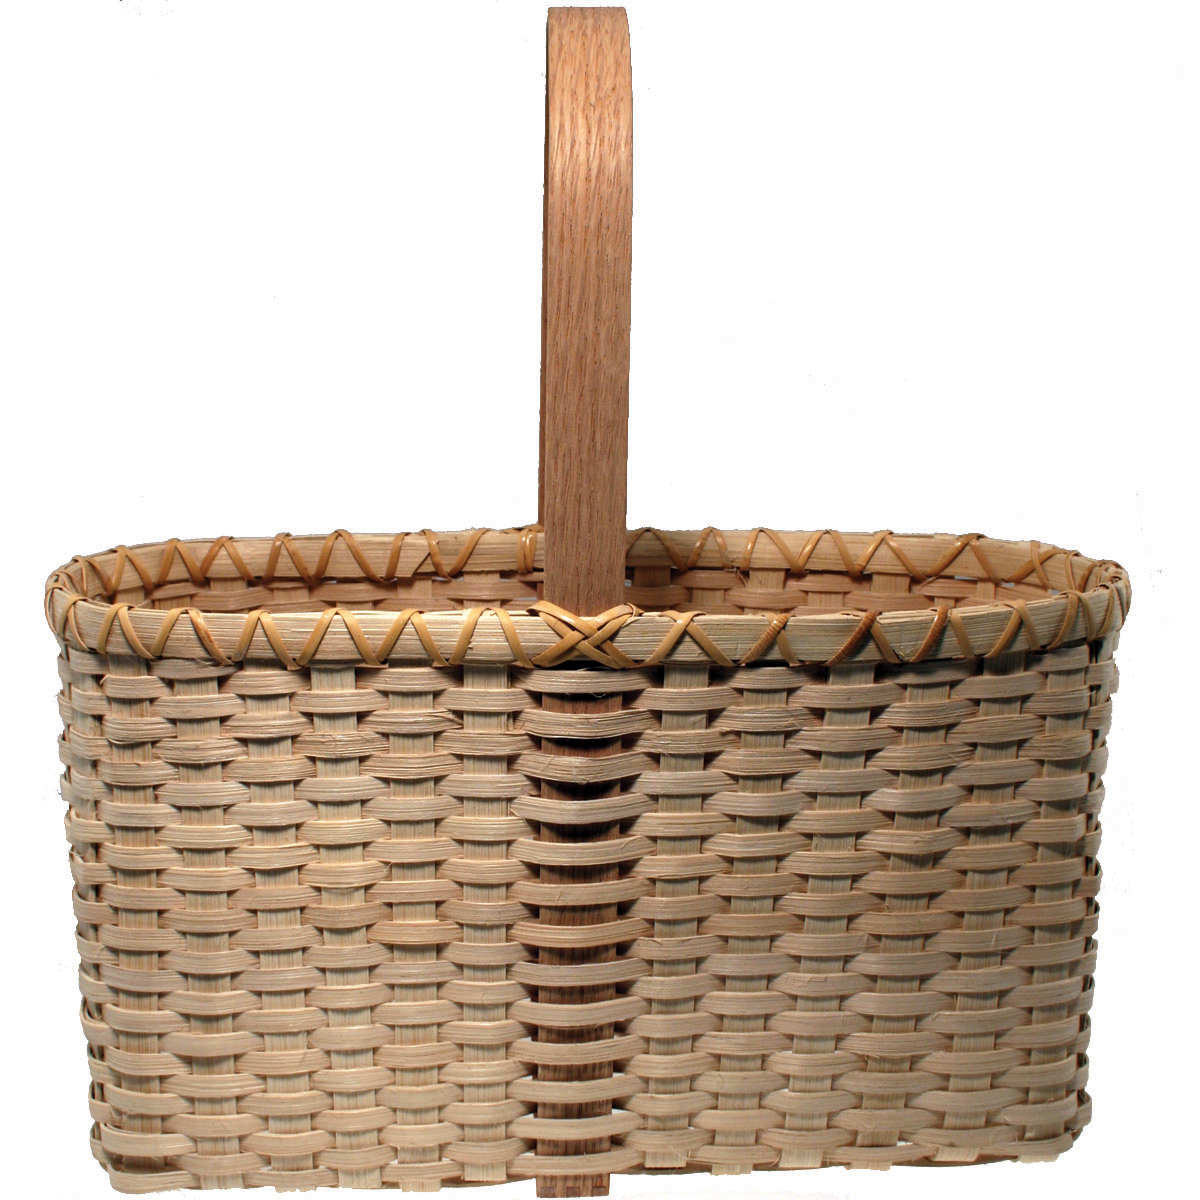 Tote Basket Weaving Kit